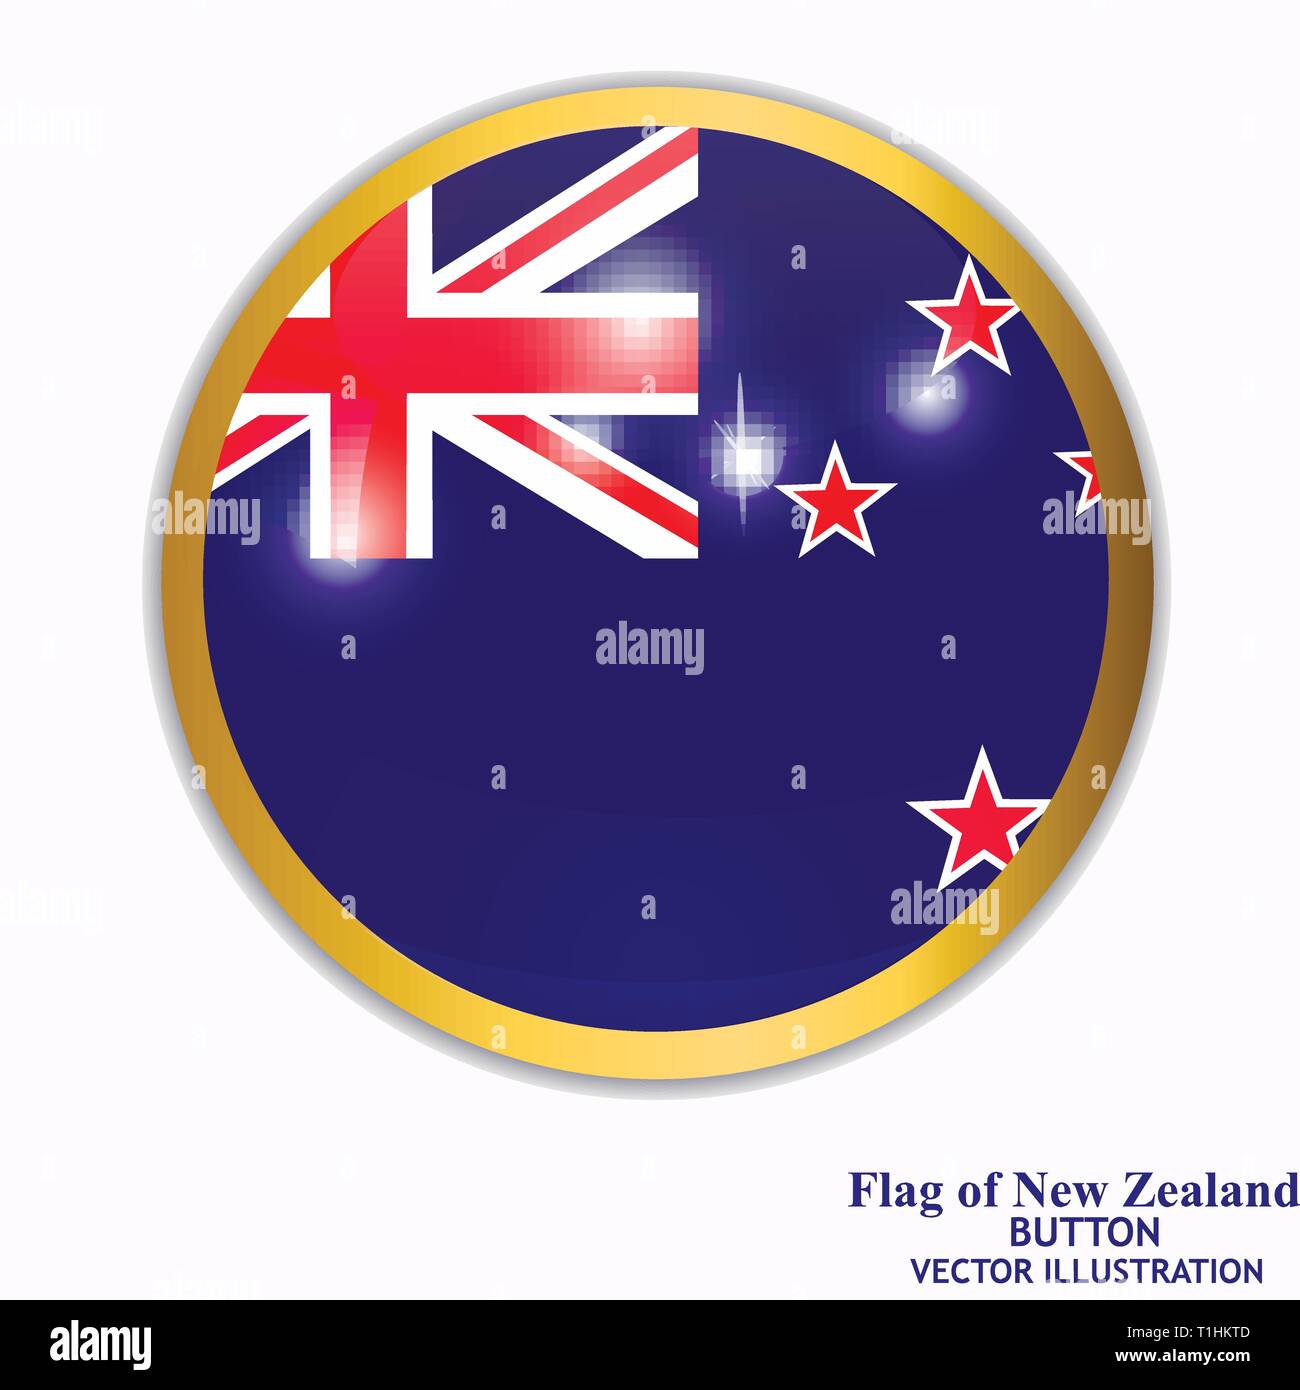 Bannière avec drapeau de la Nouvelle-Zélande. Illustration avec des drapeaux colorés pour la conception web. Vector Illustration avec fond blanc. Illustration de Vecteur